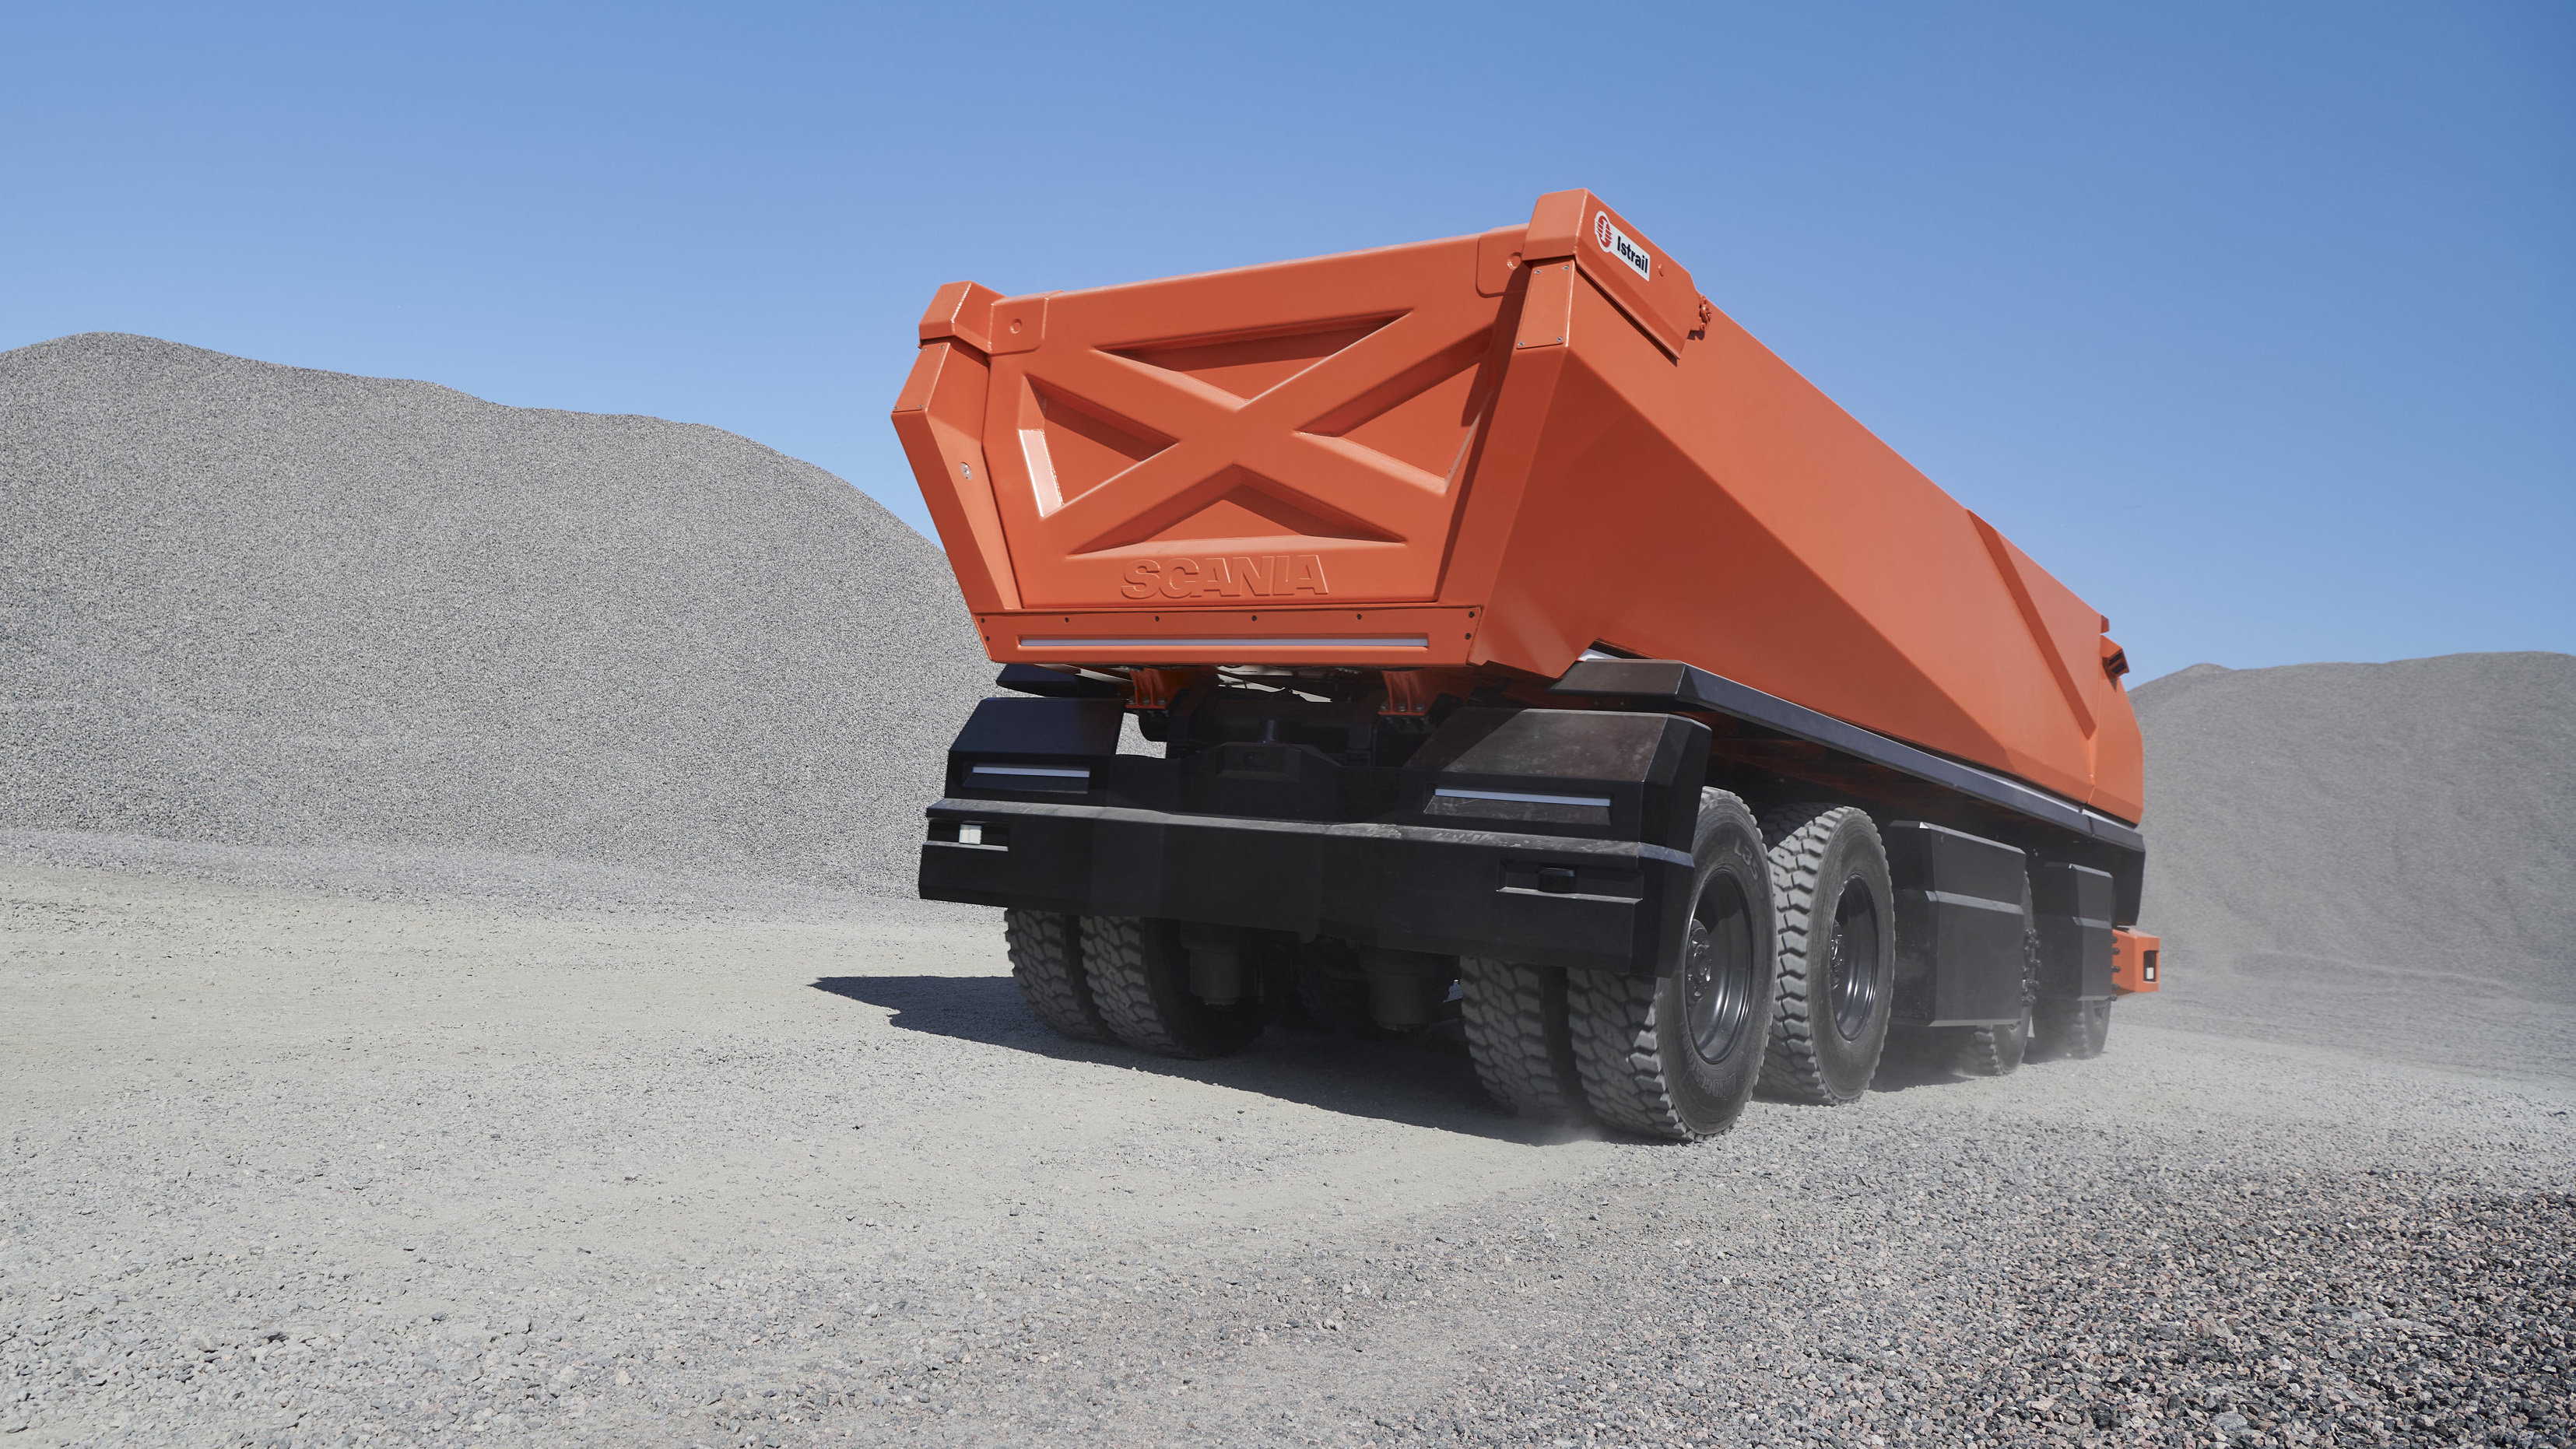 Scania has built a powersliding, autonomous dumper truck | Top Gear 3310x1870